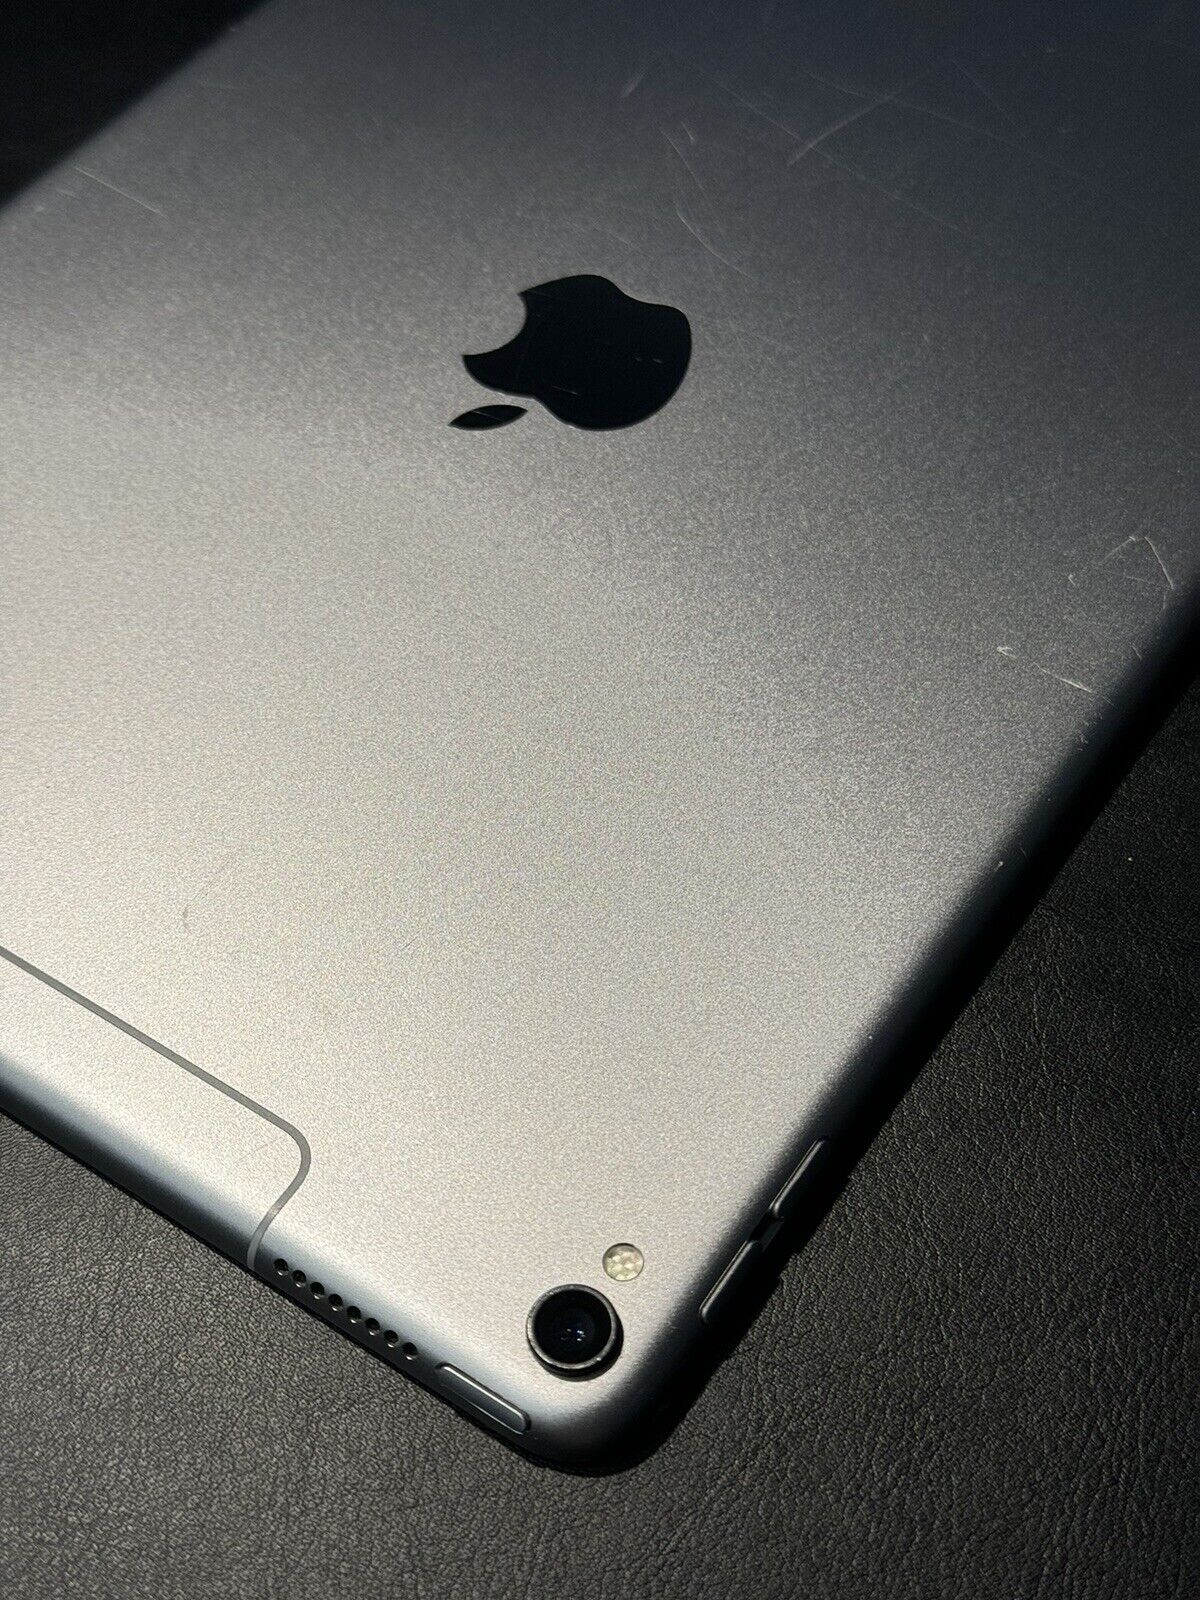 Apple iPad Pro 1st Gen. 64GB, Wi-Fi + 4G (Unlocked), 10.5 in - Space Gray Broken